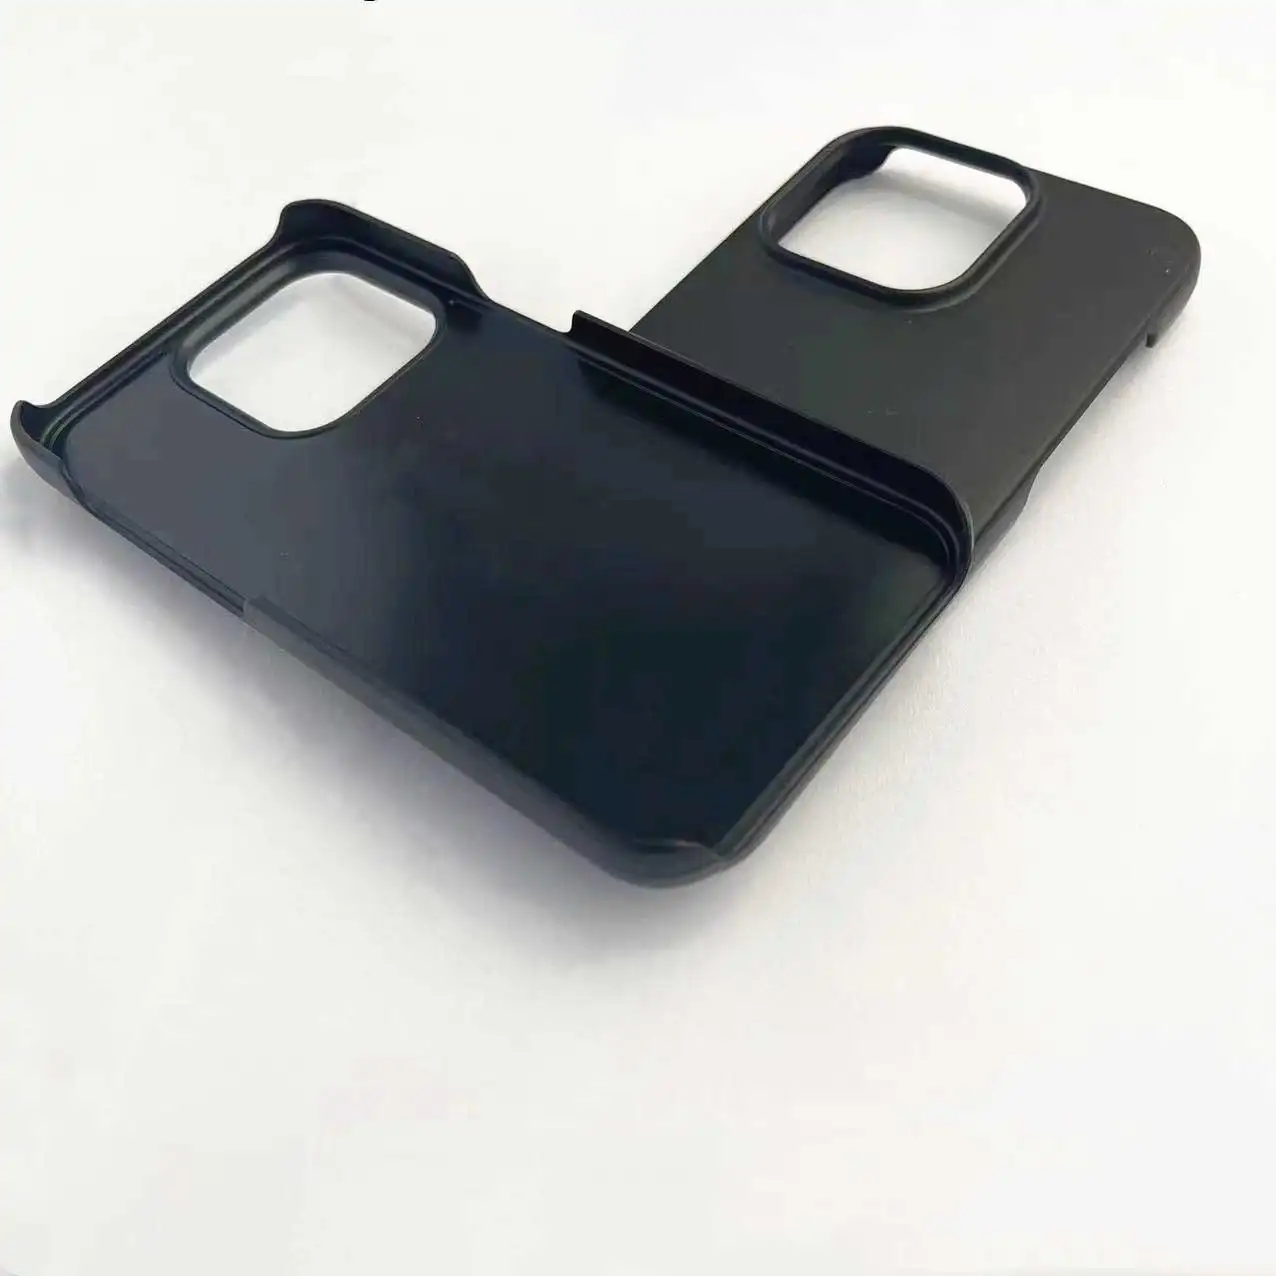 मोबाइल फोन के लिए भीतरी Grooved हार्ड पीसी खोल लपेटकर चमड़े के साथ उठाया कैमरा काले हार्ड प्लास्टिक कच्चे फोन के मामले में कवर नाली